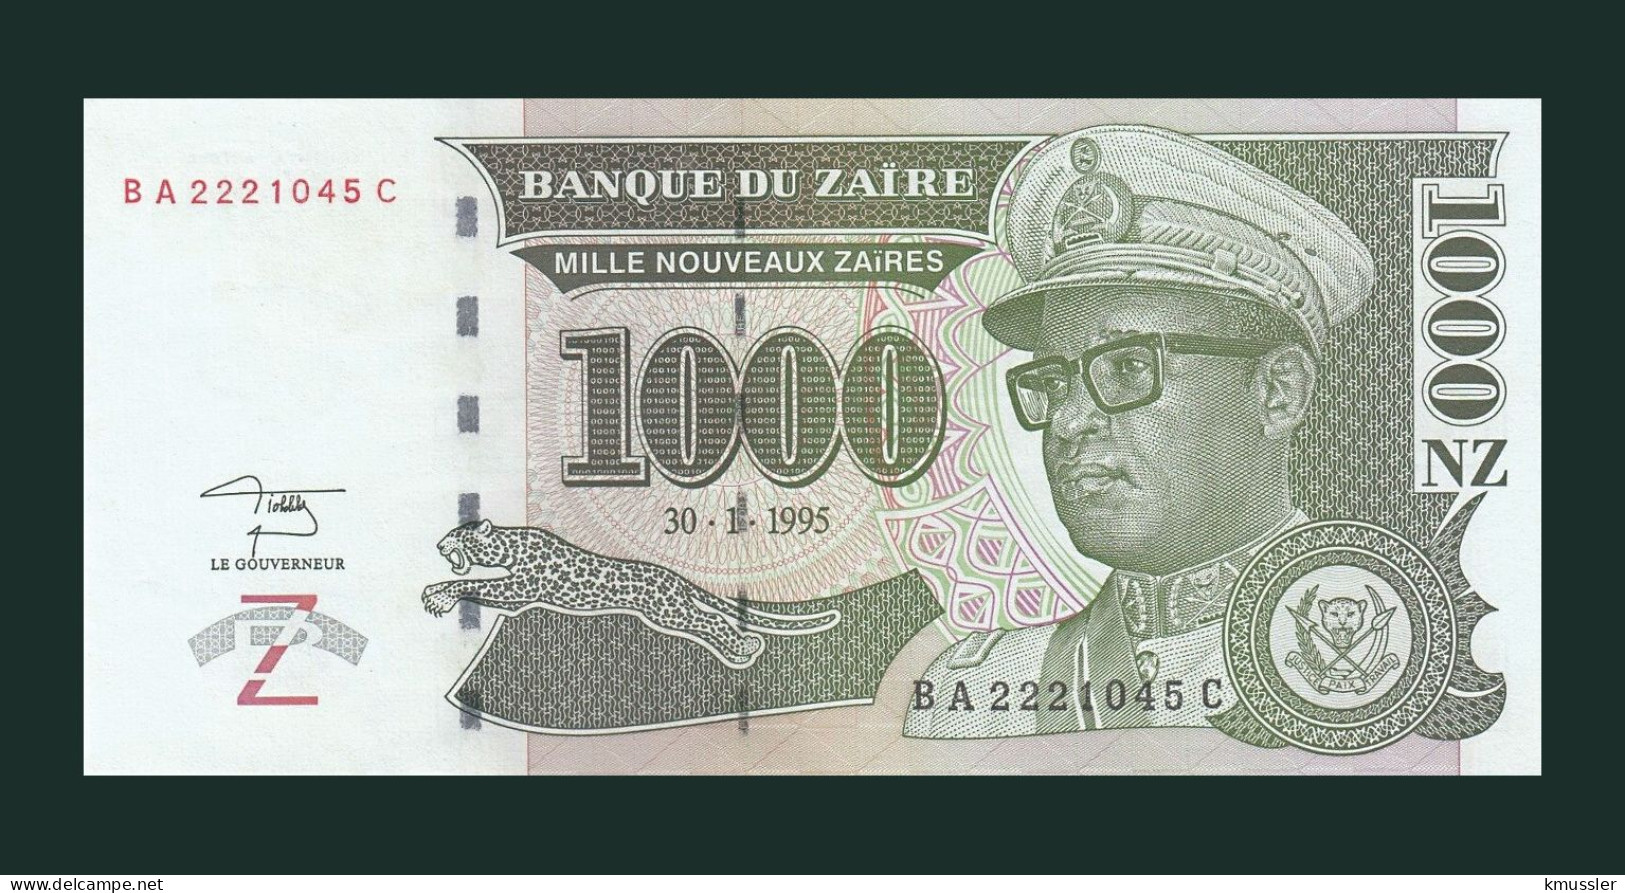 # # # Banknote Zaire 1.000 Nouveaux Zaires 1995 (P-67) HDMZ UNC # # # - Zaire